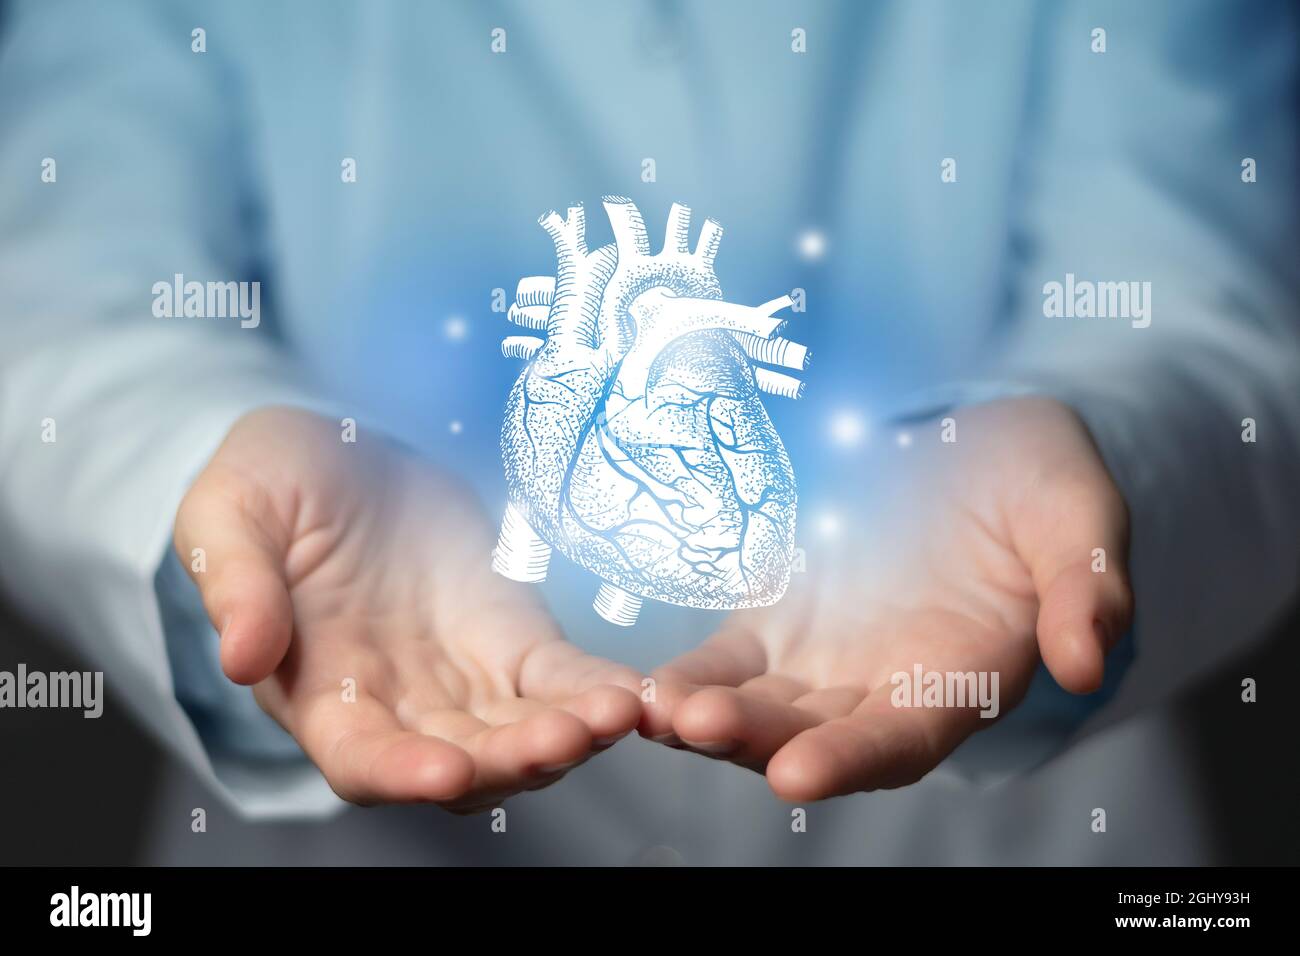 Problèmes cardiaques concept médical. Photo d'une femme médecin, espace vide. Banque D'Images